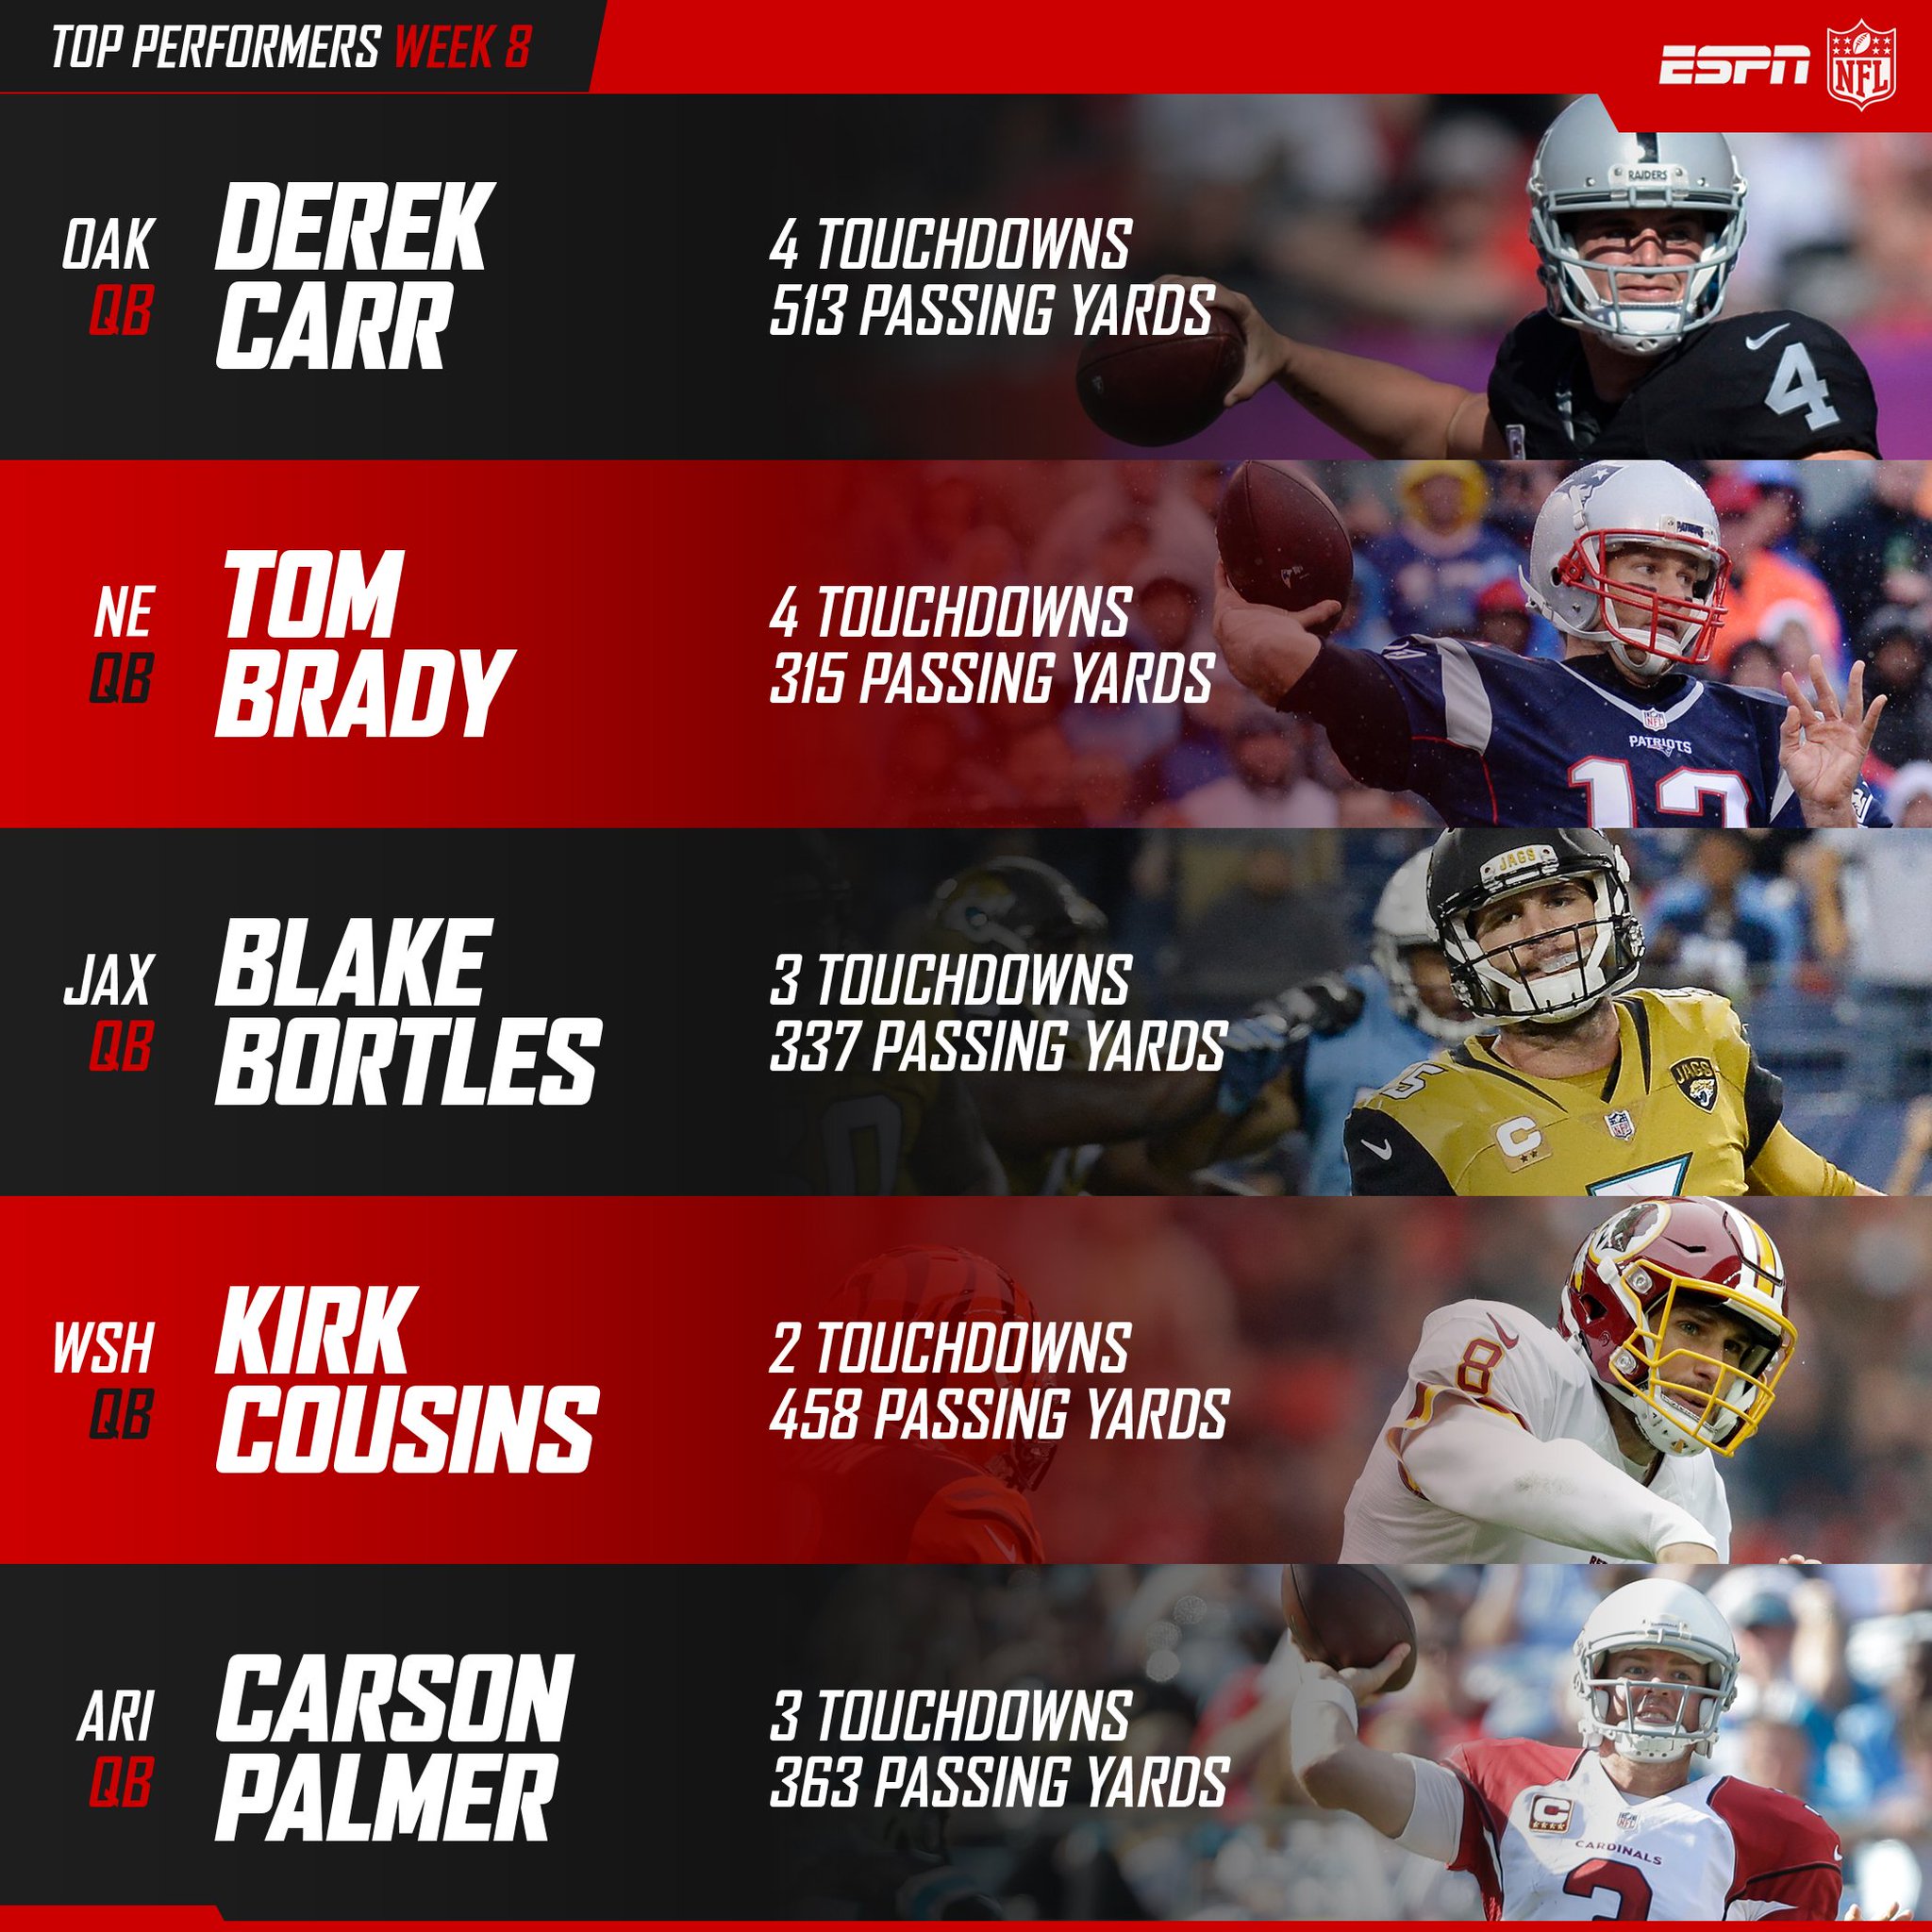 NFL on ESPN on Twitter: "Week 8 NFL passing leaders…